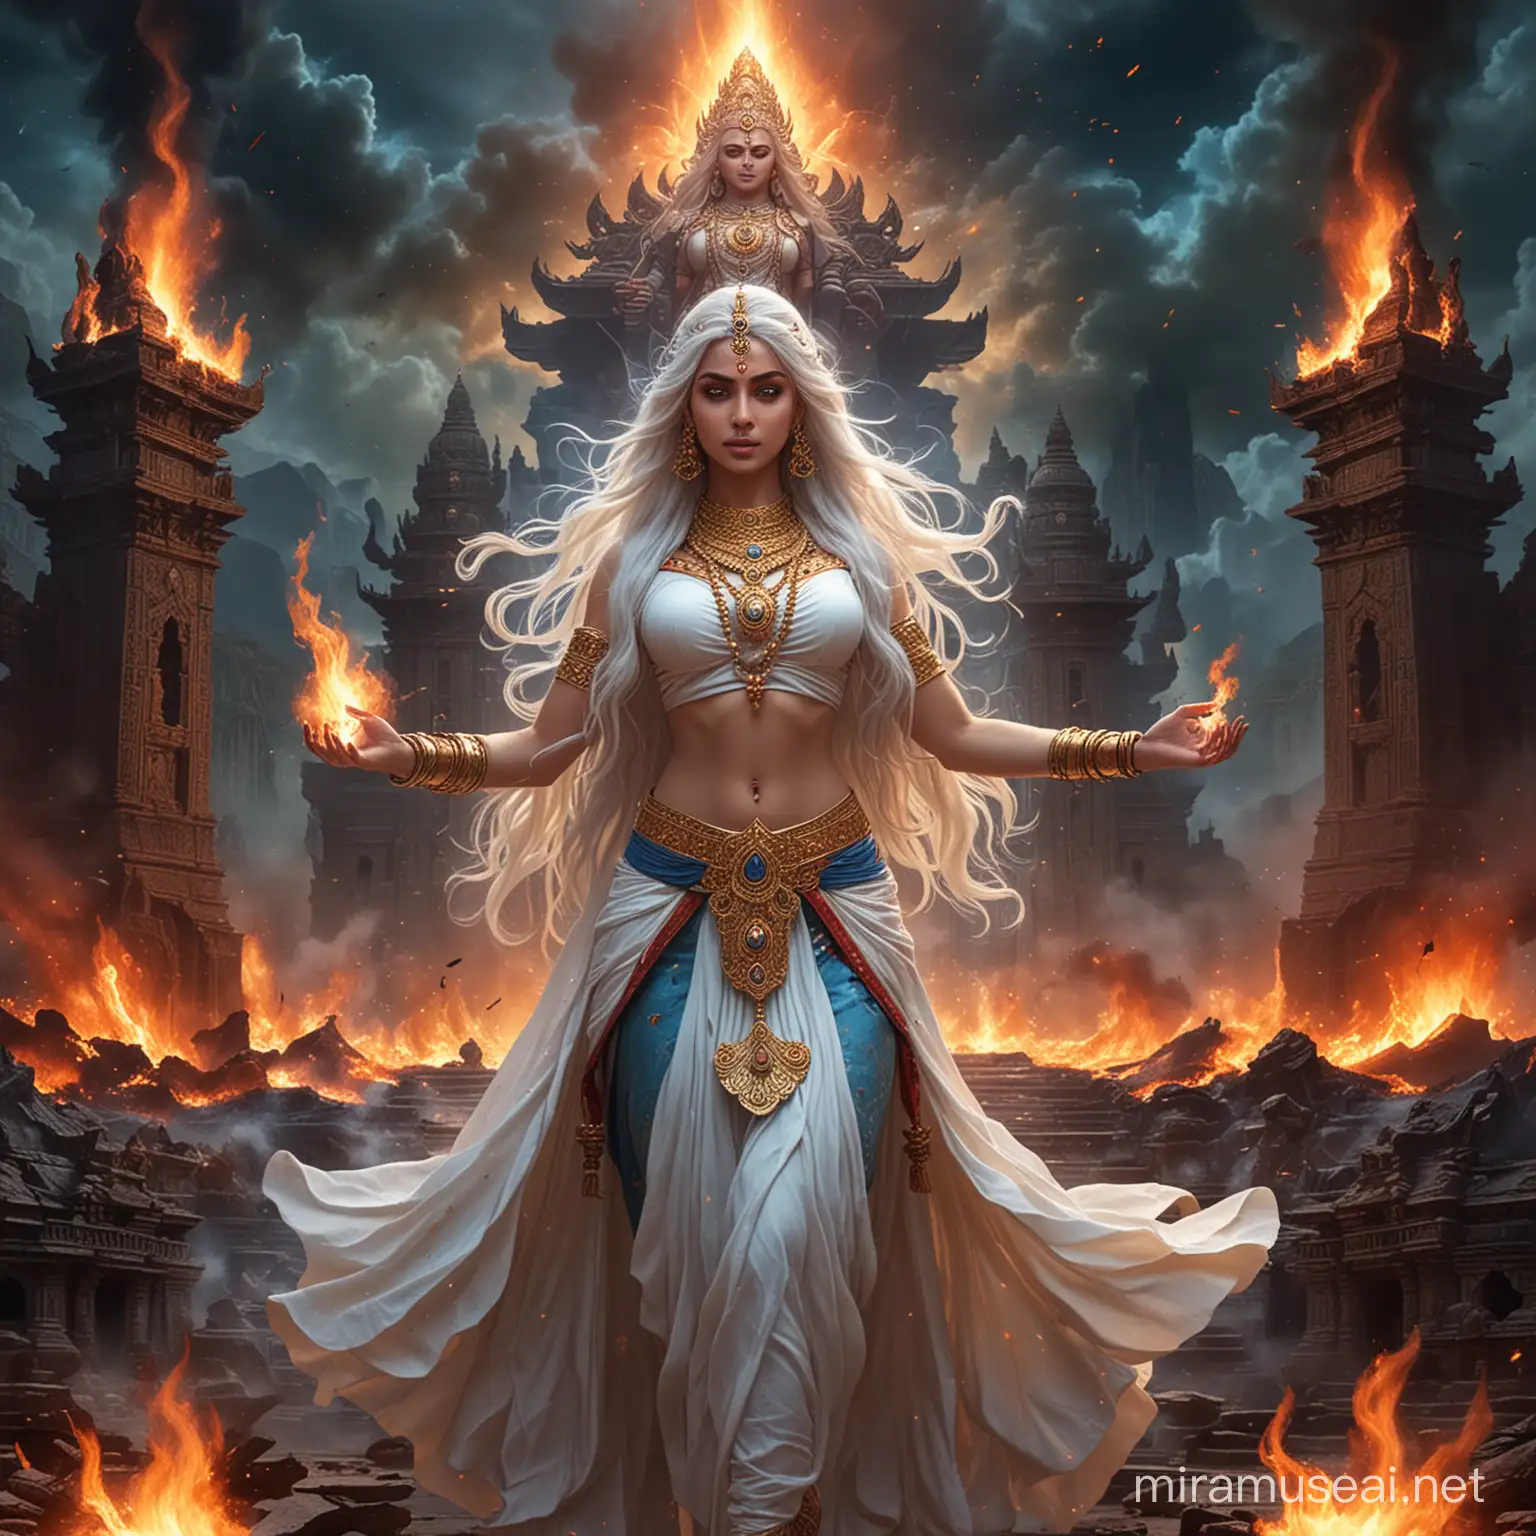 Hindu Empress Goddess in Mystical Fire Battle